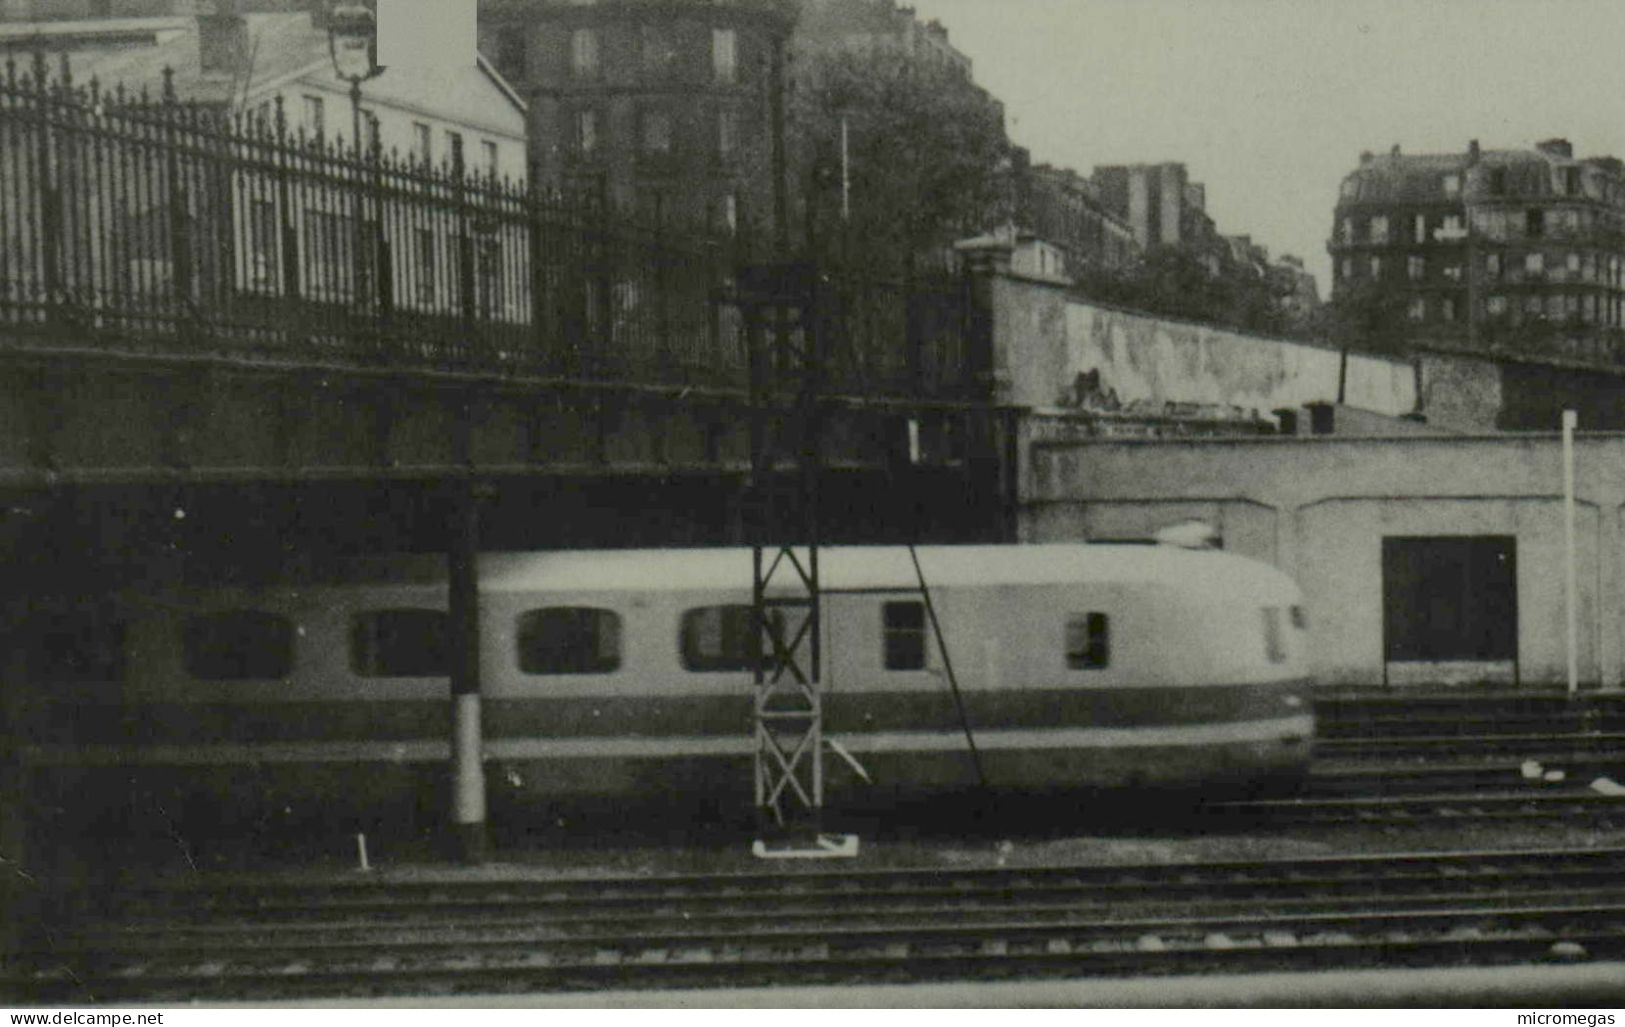 Reproduction - TAR  79-9005, été 1935 - Trains